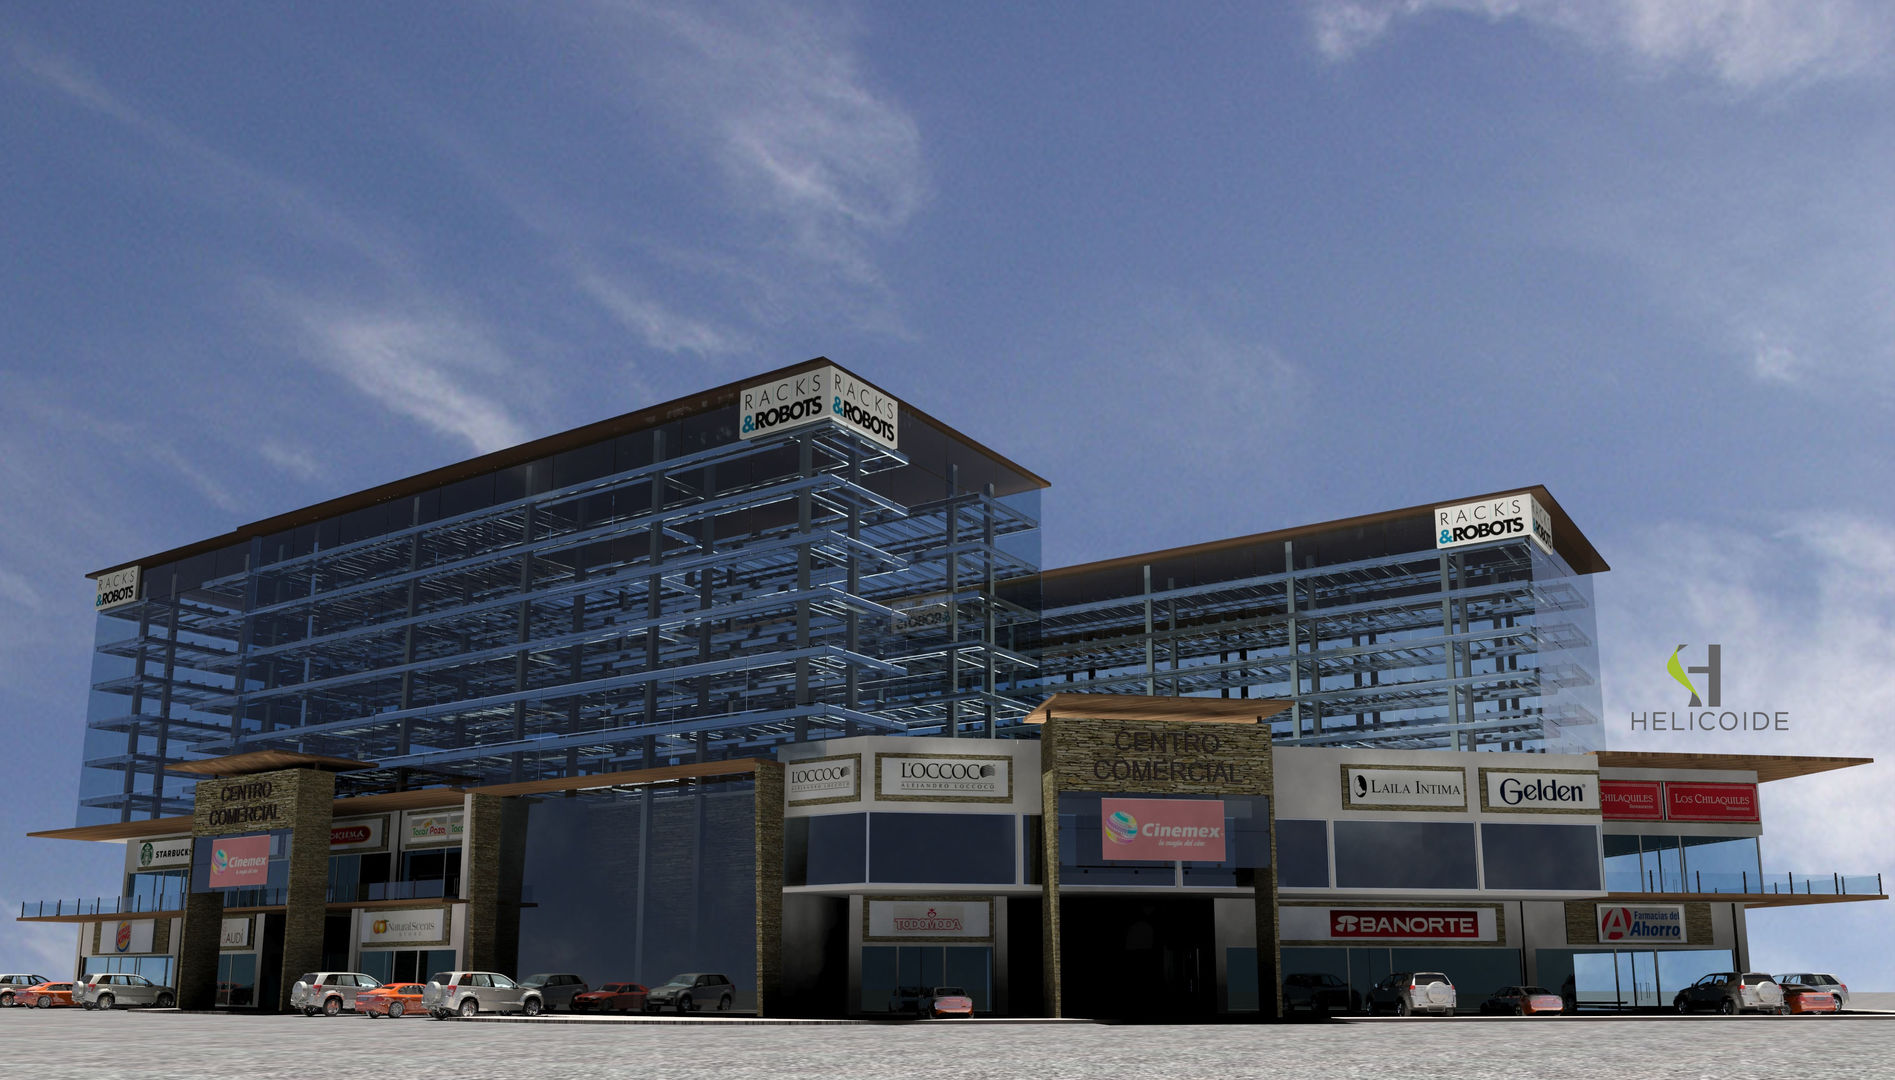 Cuerpos de estacionamiento robotizado Helicoide Estudio de Arquitectura Espacios comerciales Centros comerciales